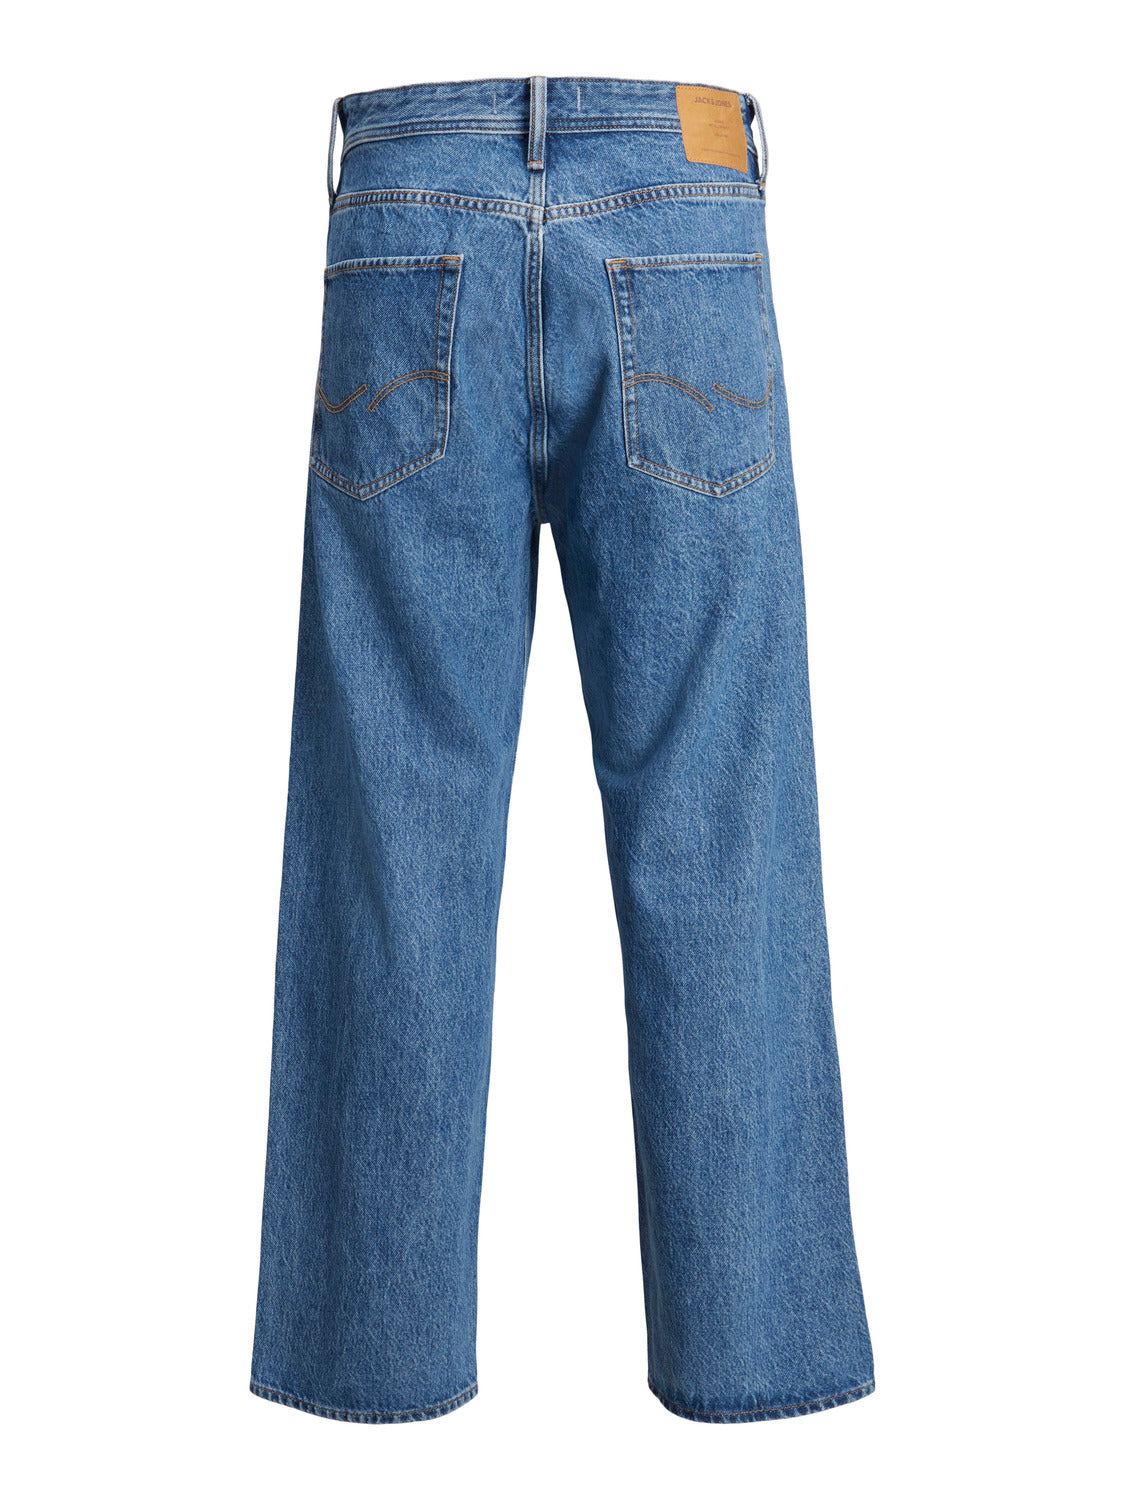 JJIALEX Jeans - Blue Denim